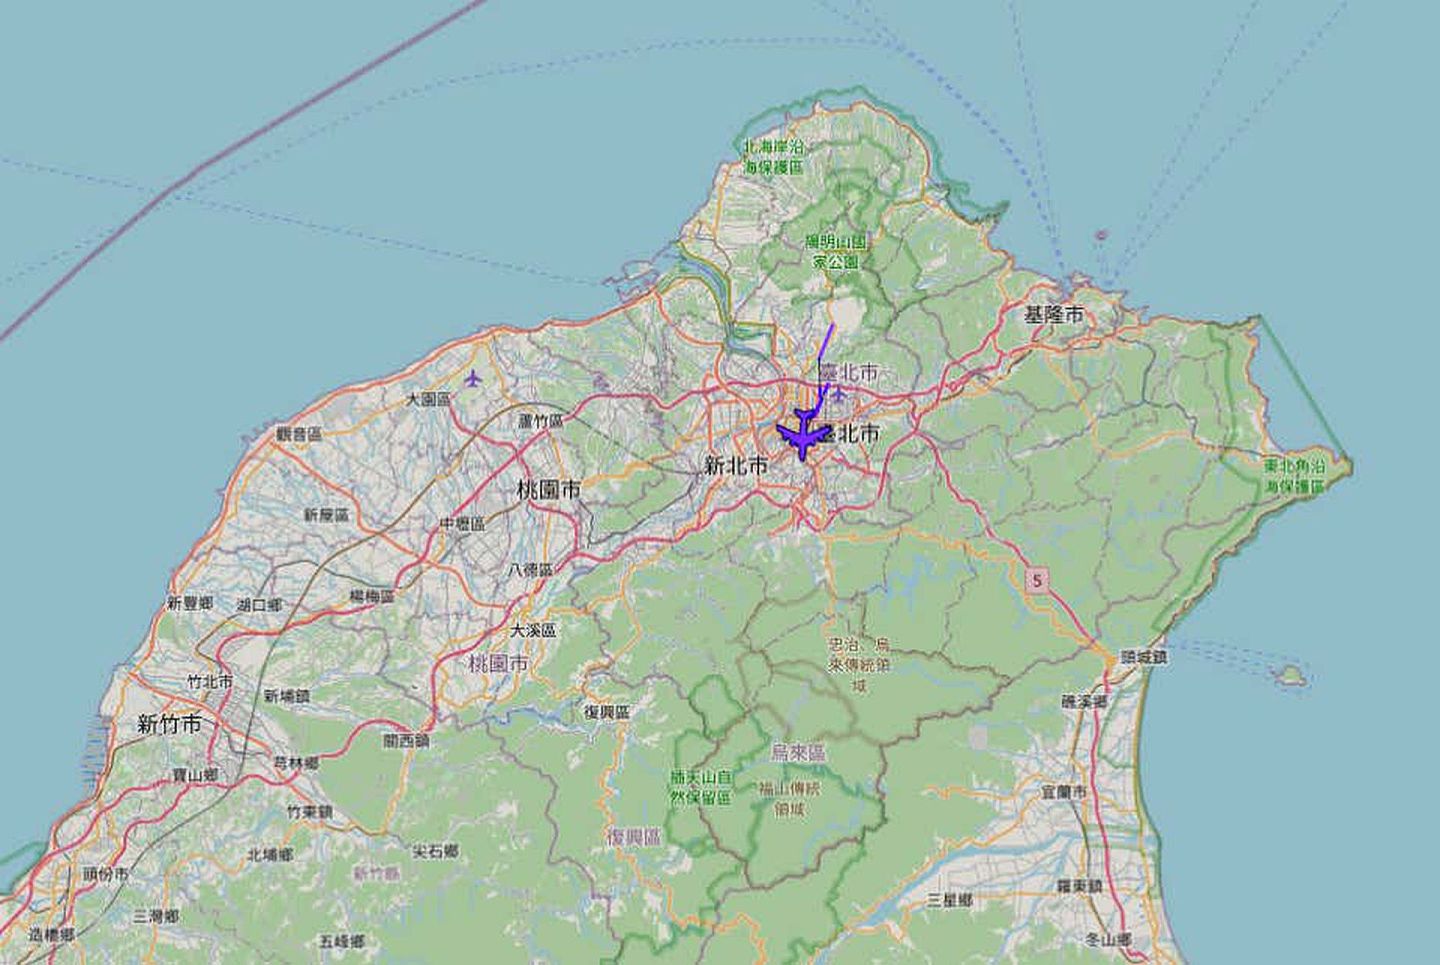 美空军电战机穿越台湾领空一事，至今已经经由三个以上的美、日专业航迹网站证实，且疑似美国空军官员也承认此事。 （摘自《The Drive》网站）